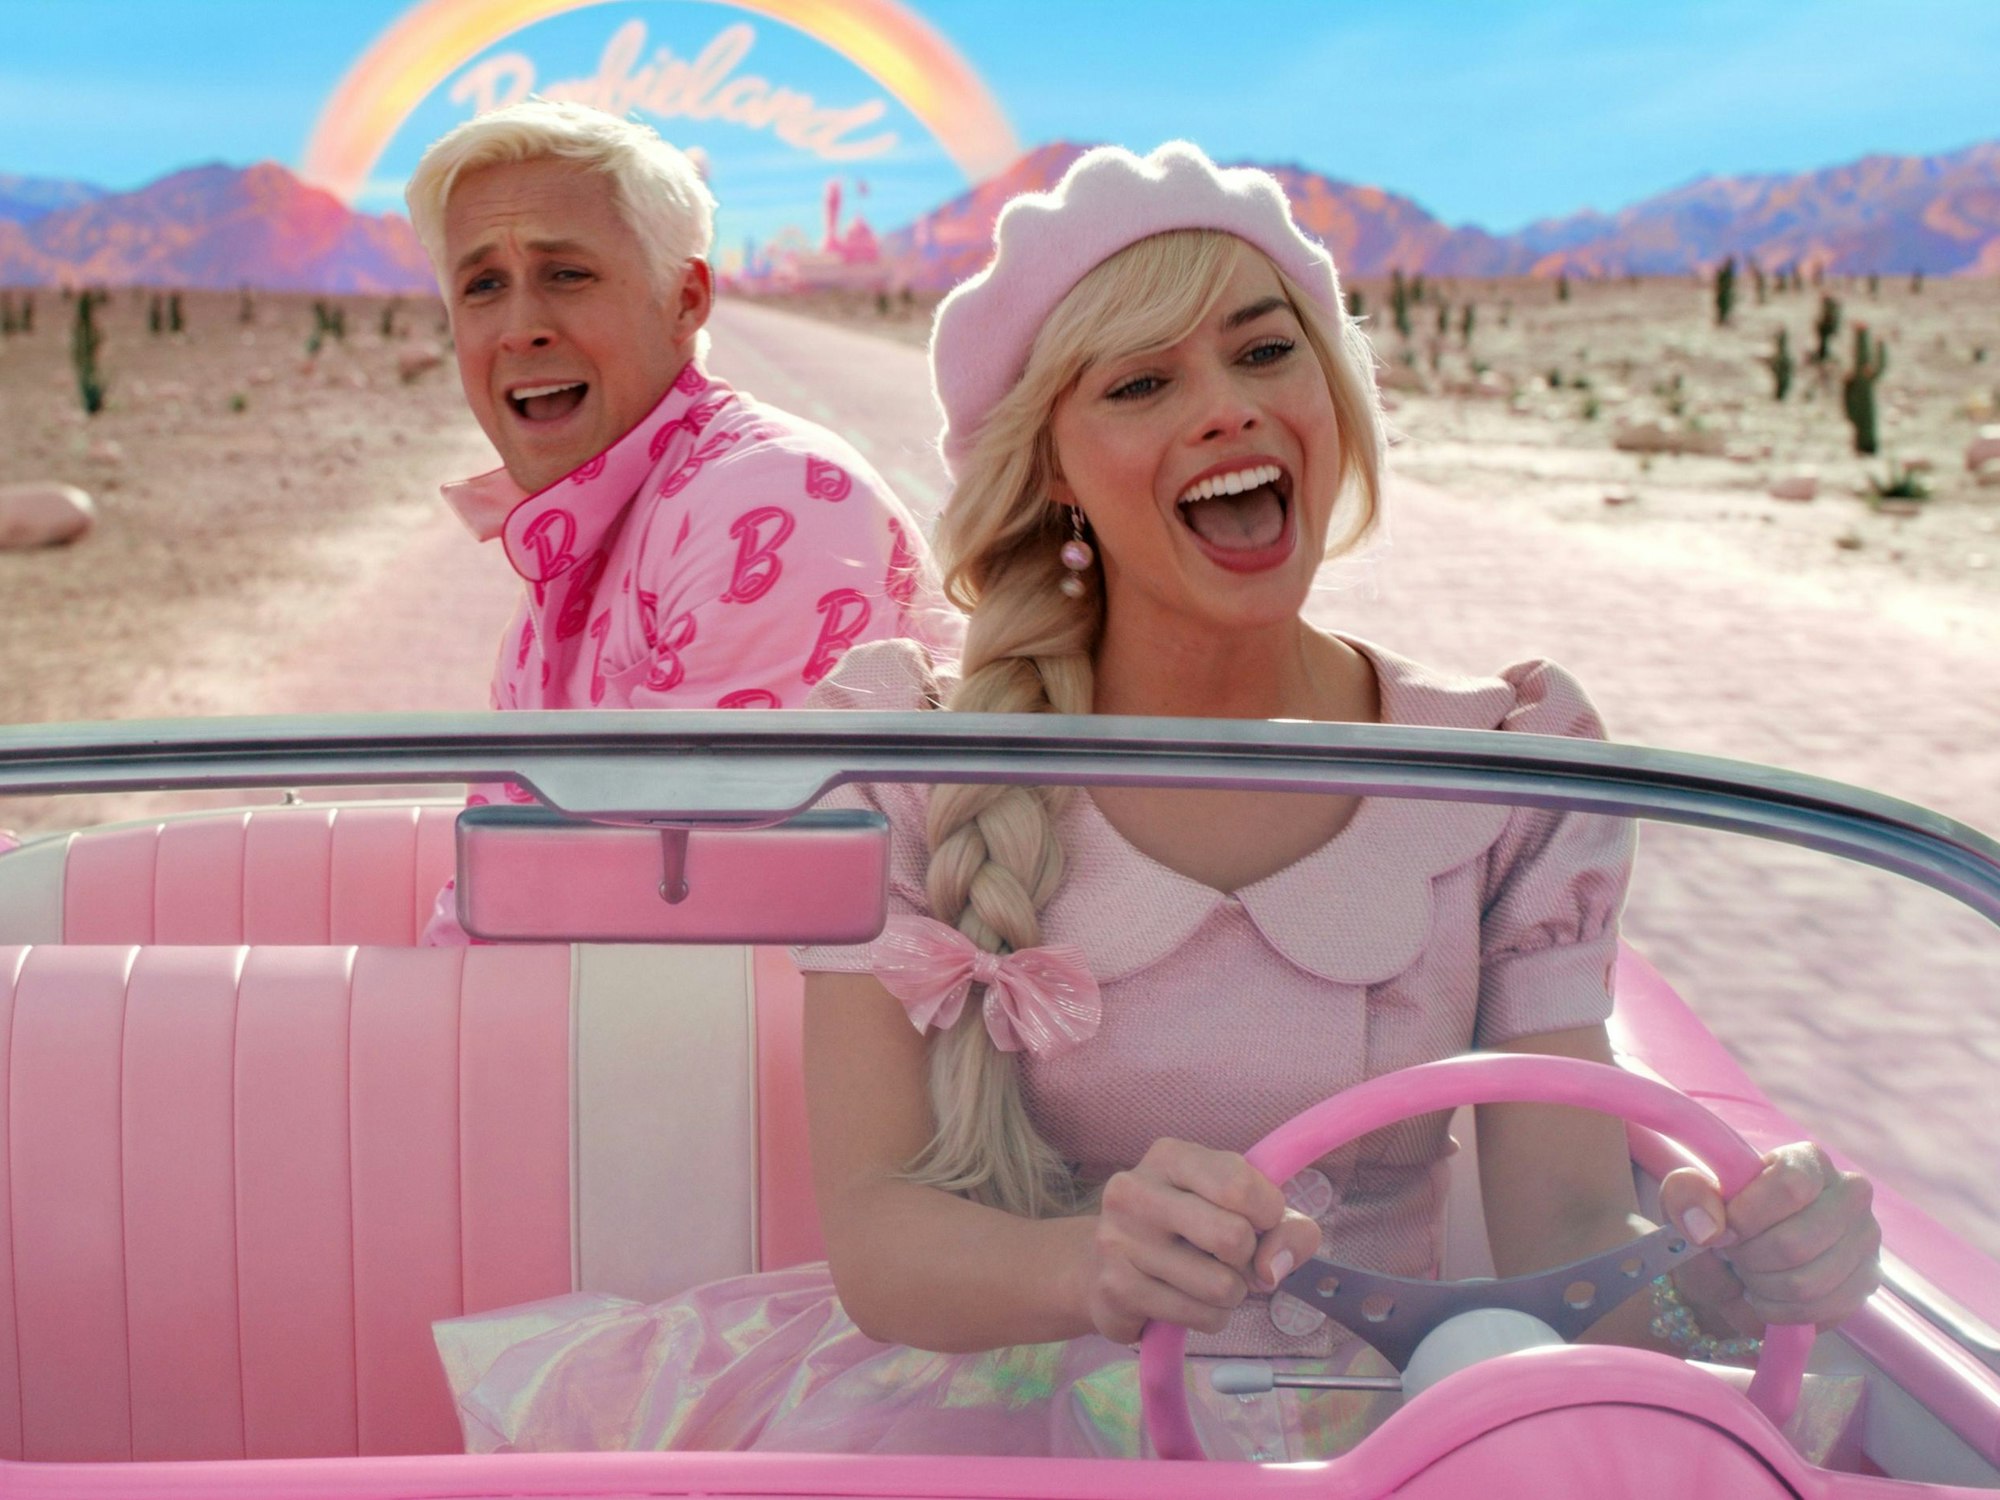 Ryan Gosling als Ken and Margot Robbie als Barbie in einer Szene des Films „Barbie“.